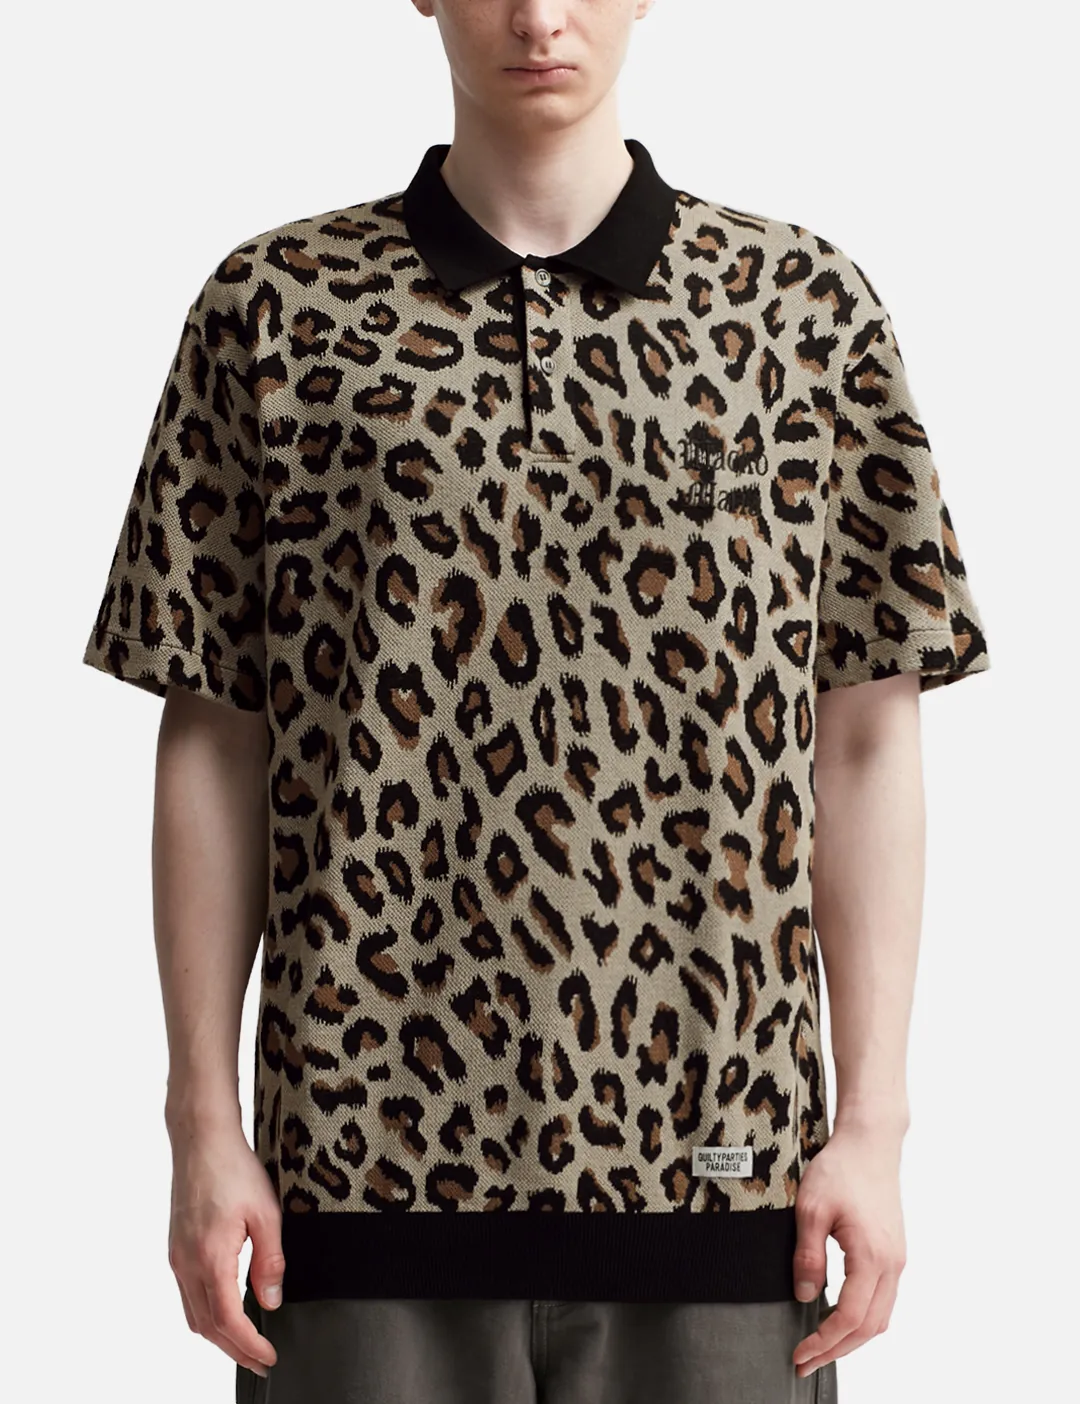 Wacko Maria - Leopard Knit Polo Shirt | HBX - HYPEBEAST 为您搜罗